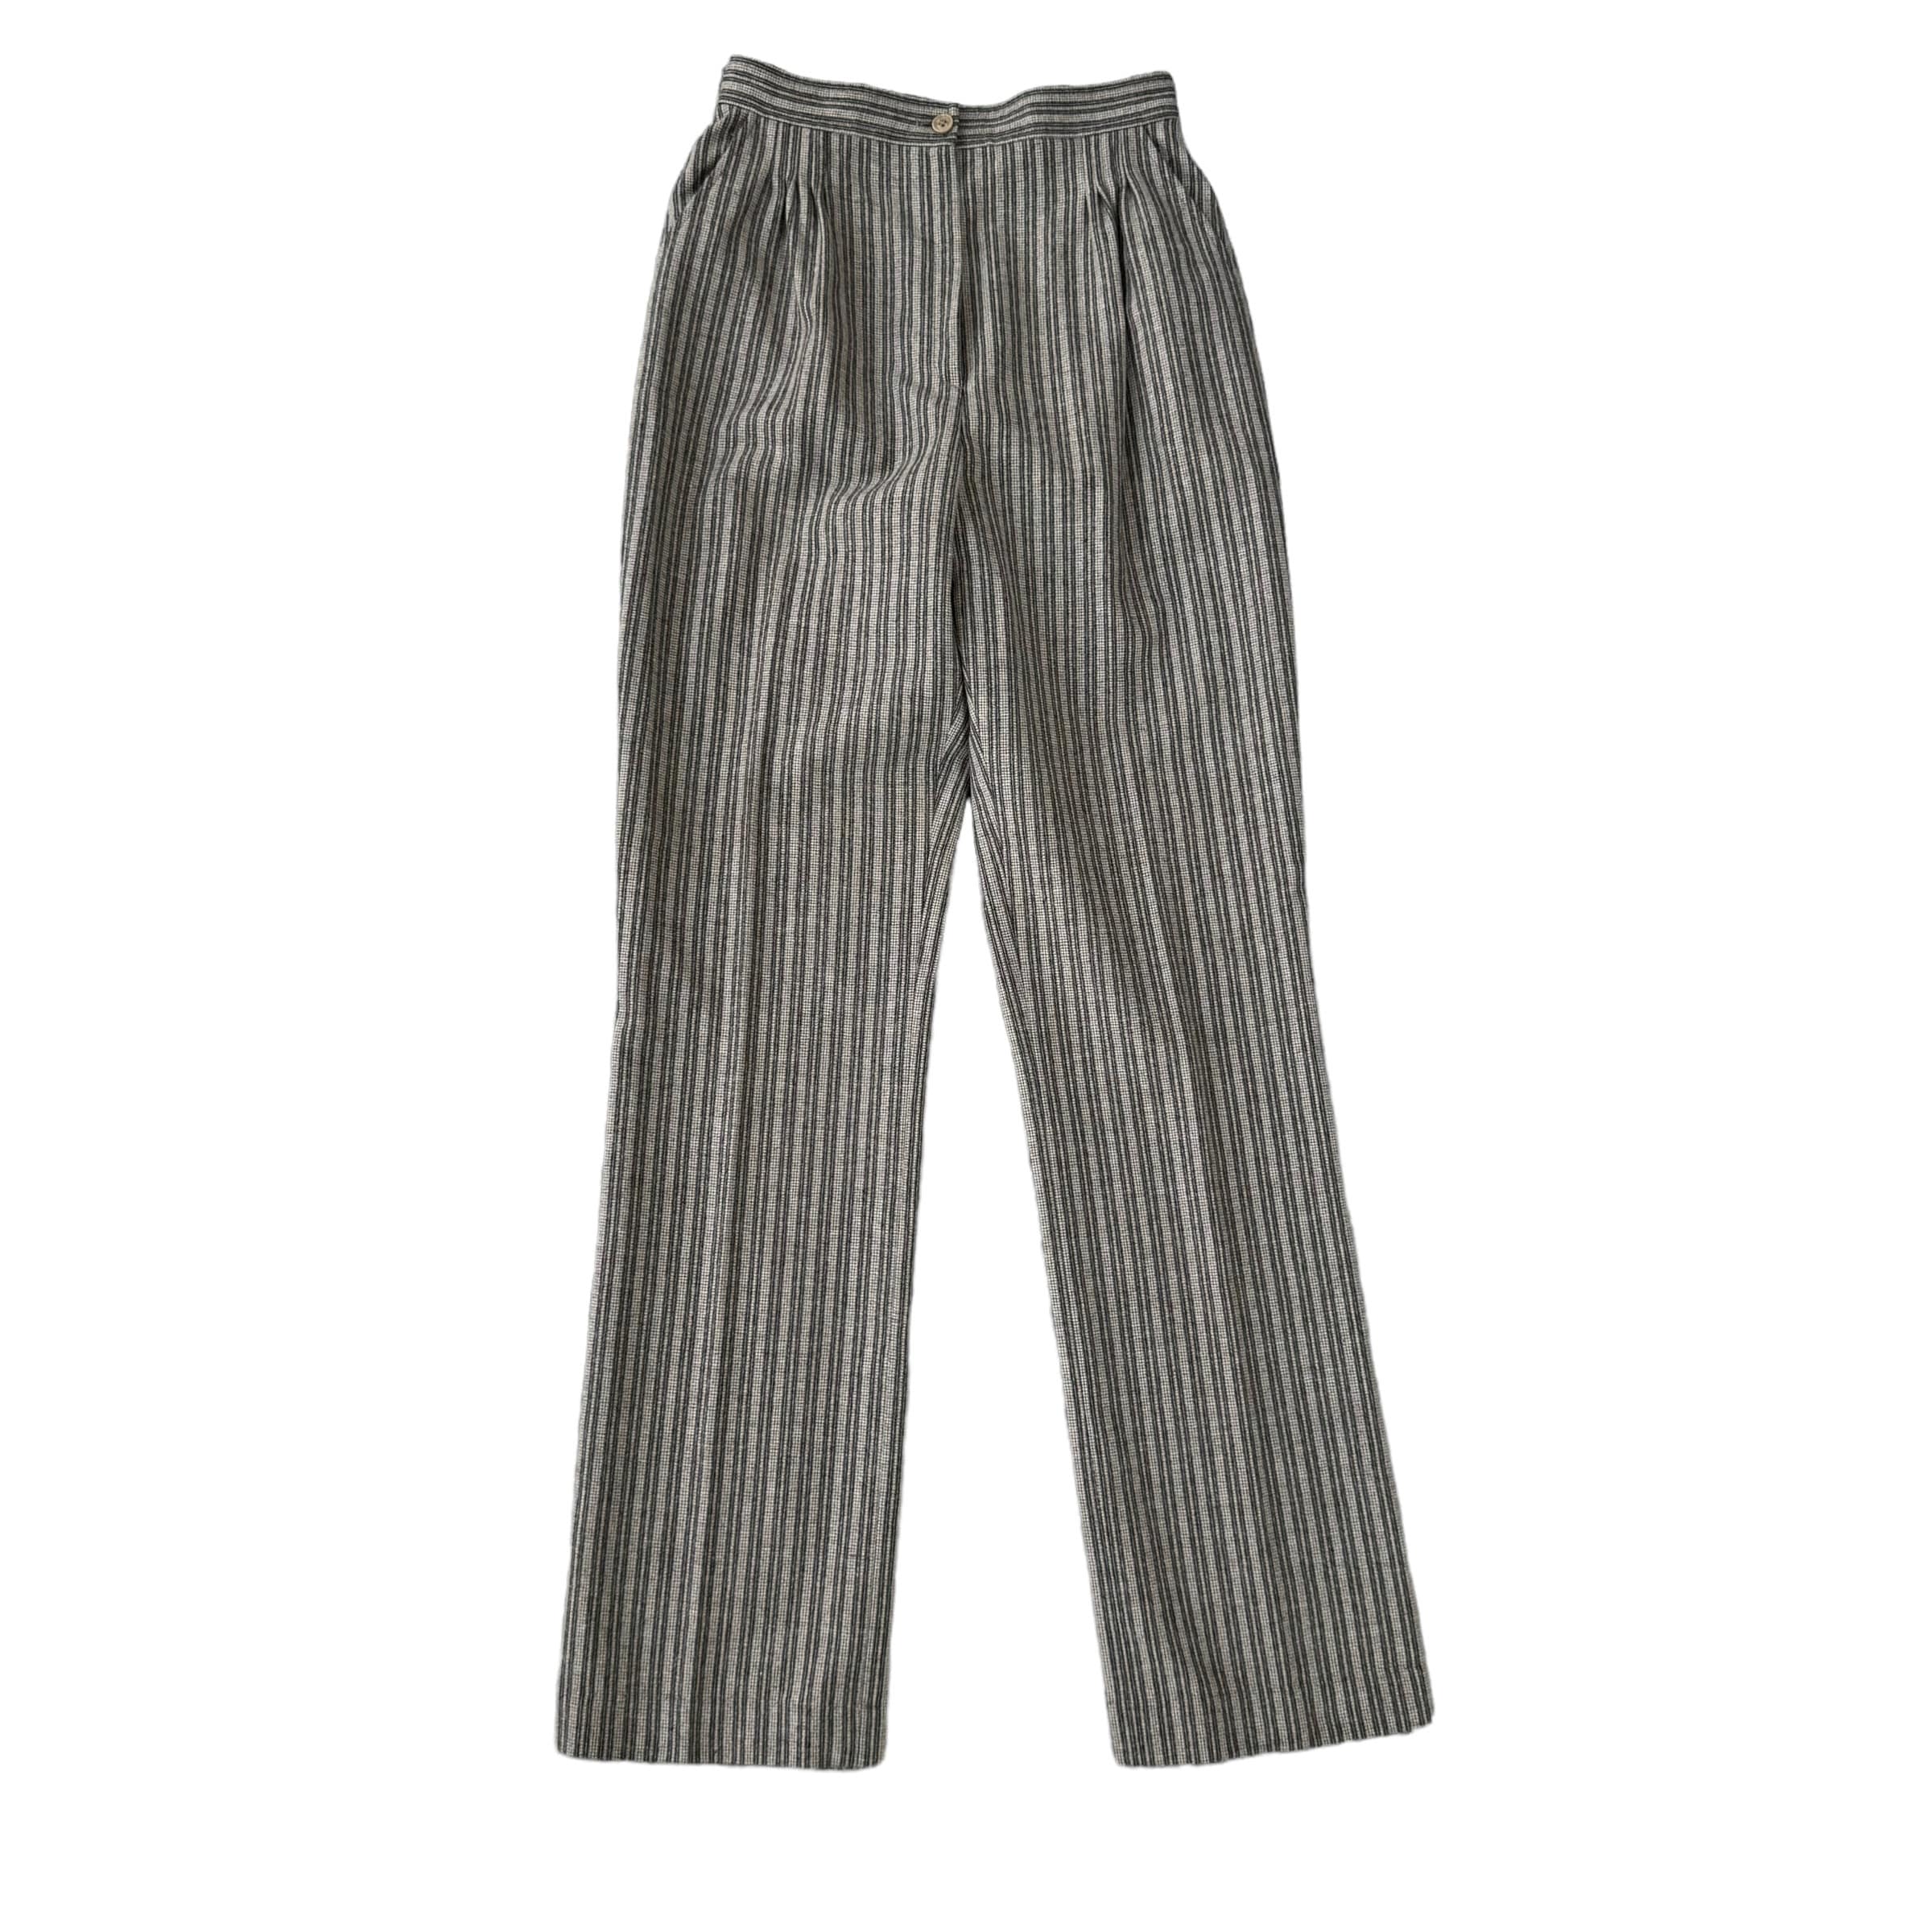 Mister Leonard by Len Wasser Vintage Striped Wool Pants Size S 